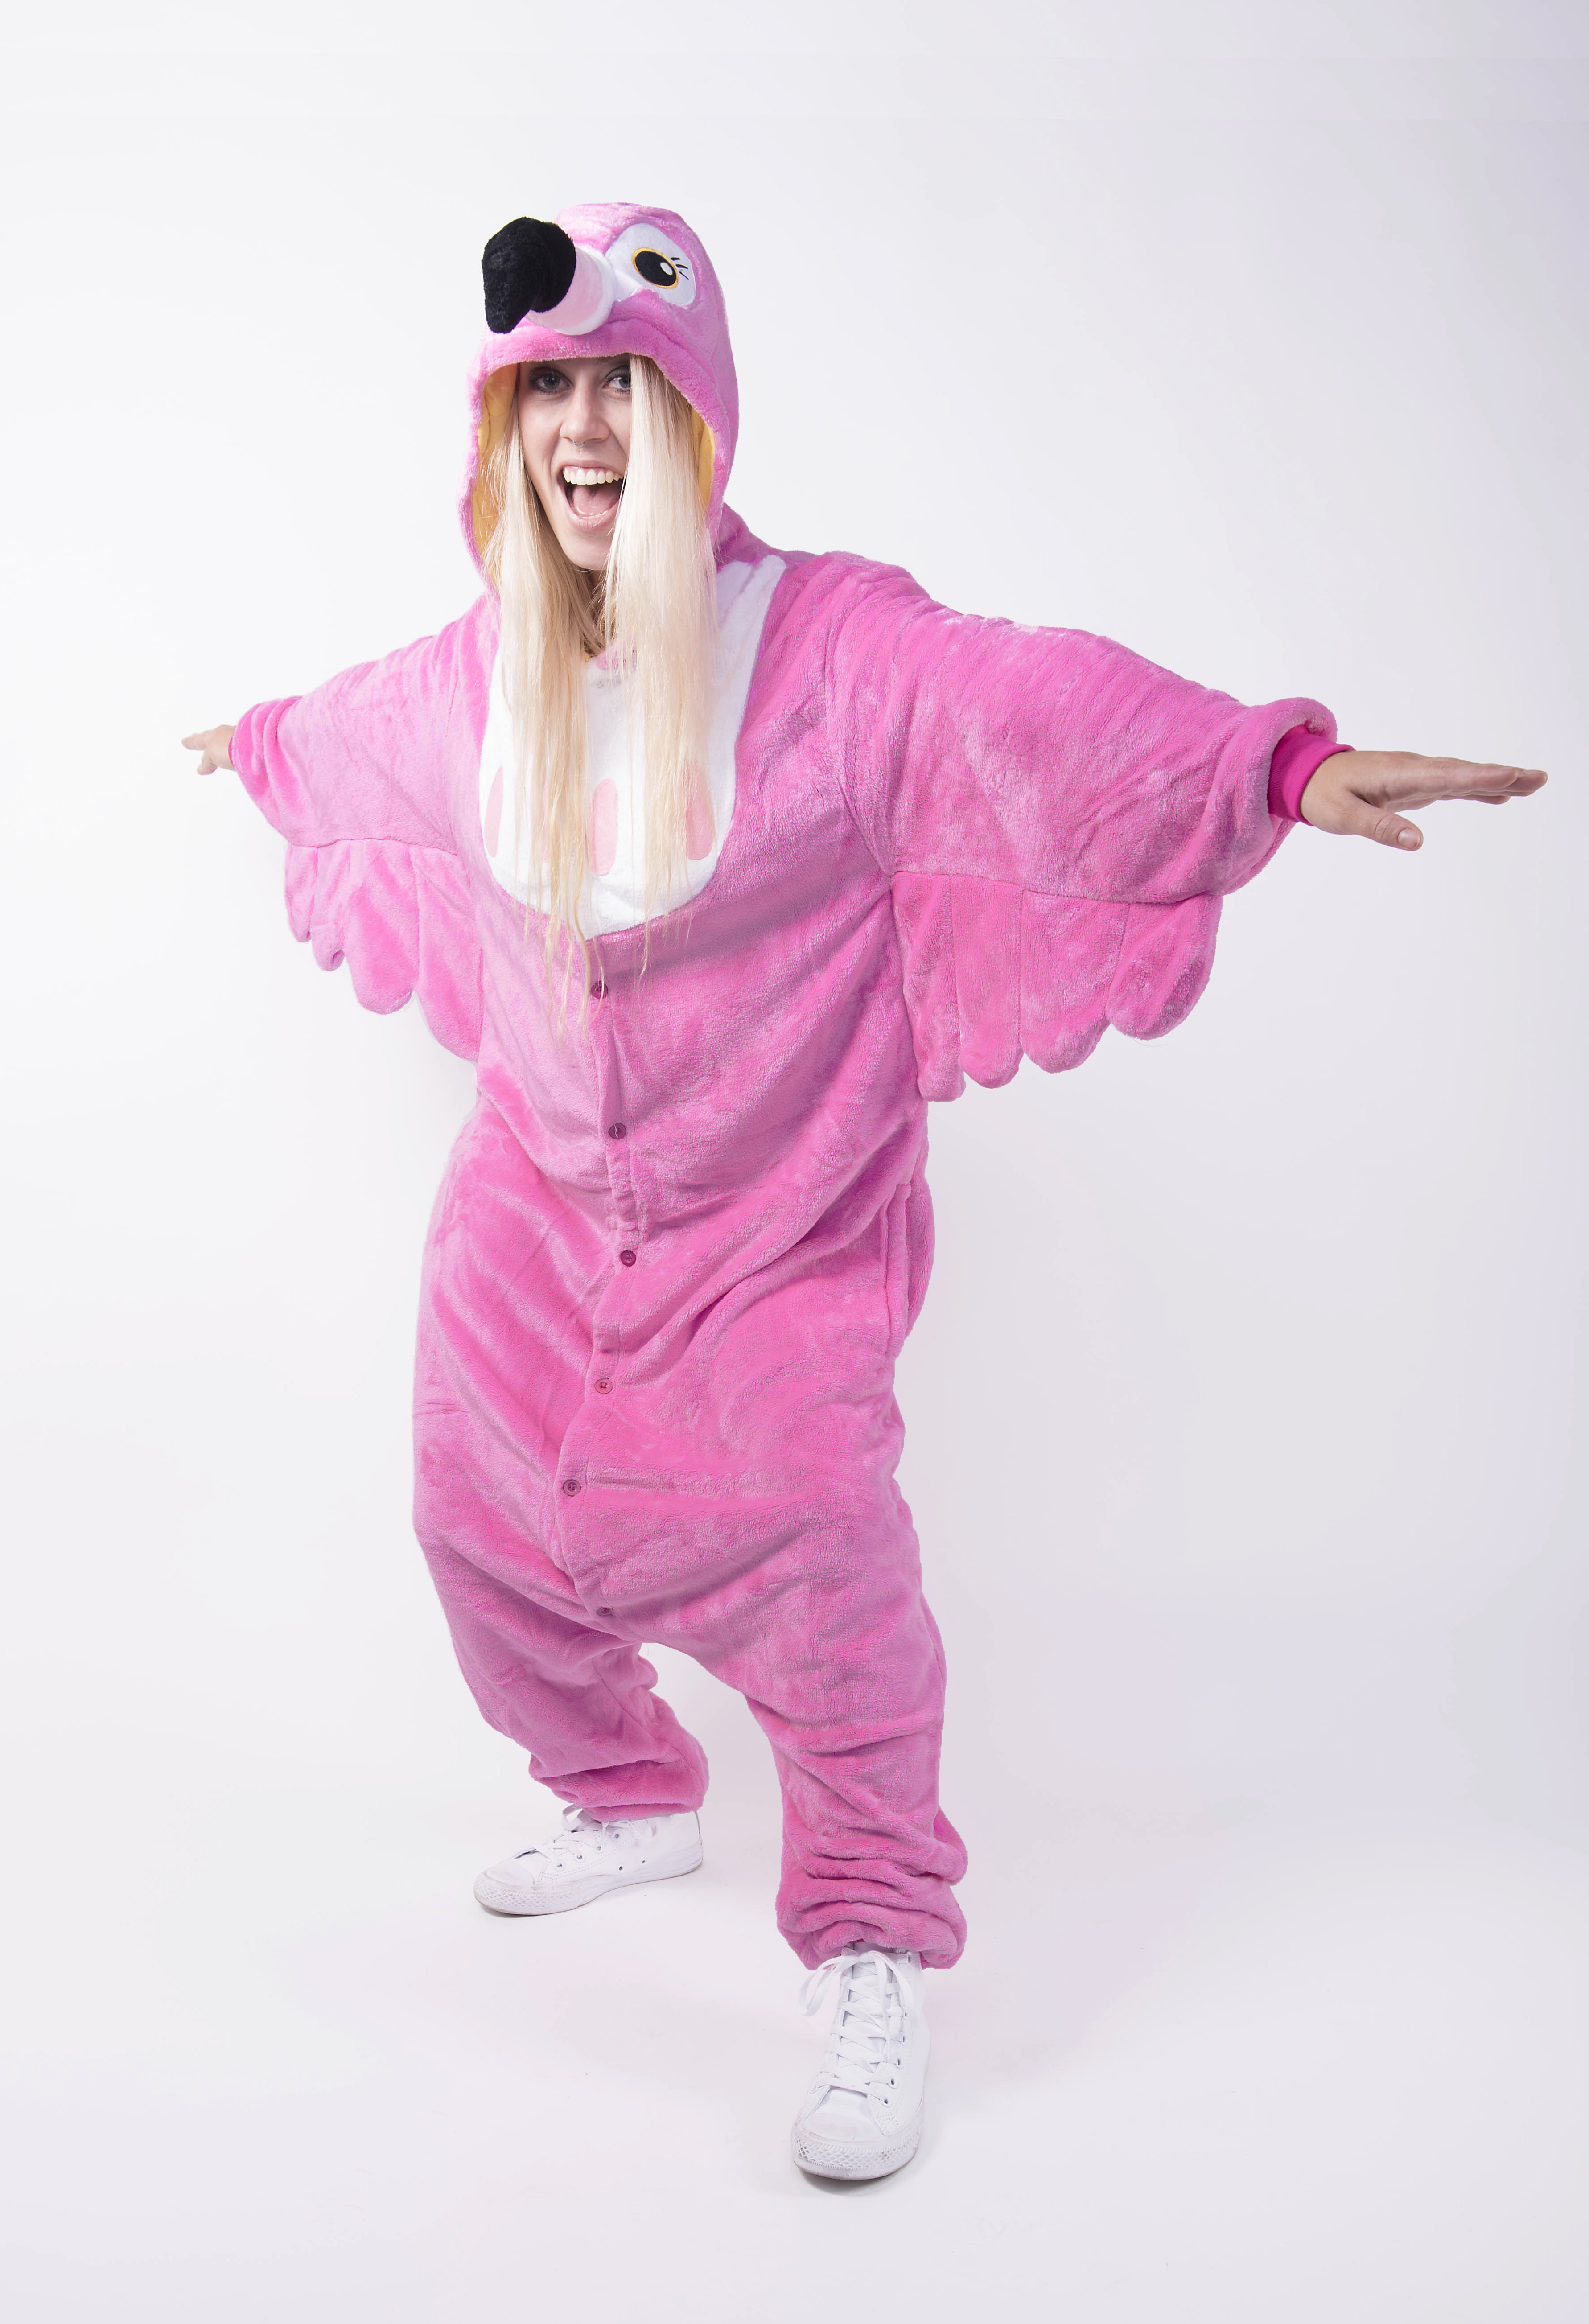 Verblinding droom meditatie Roze flamingo onesie pak kostuum kopen? - FeestinjeBeest.nl